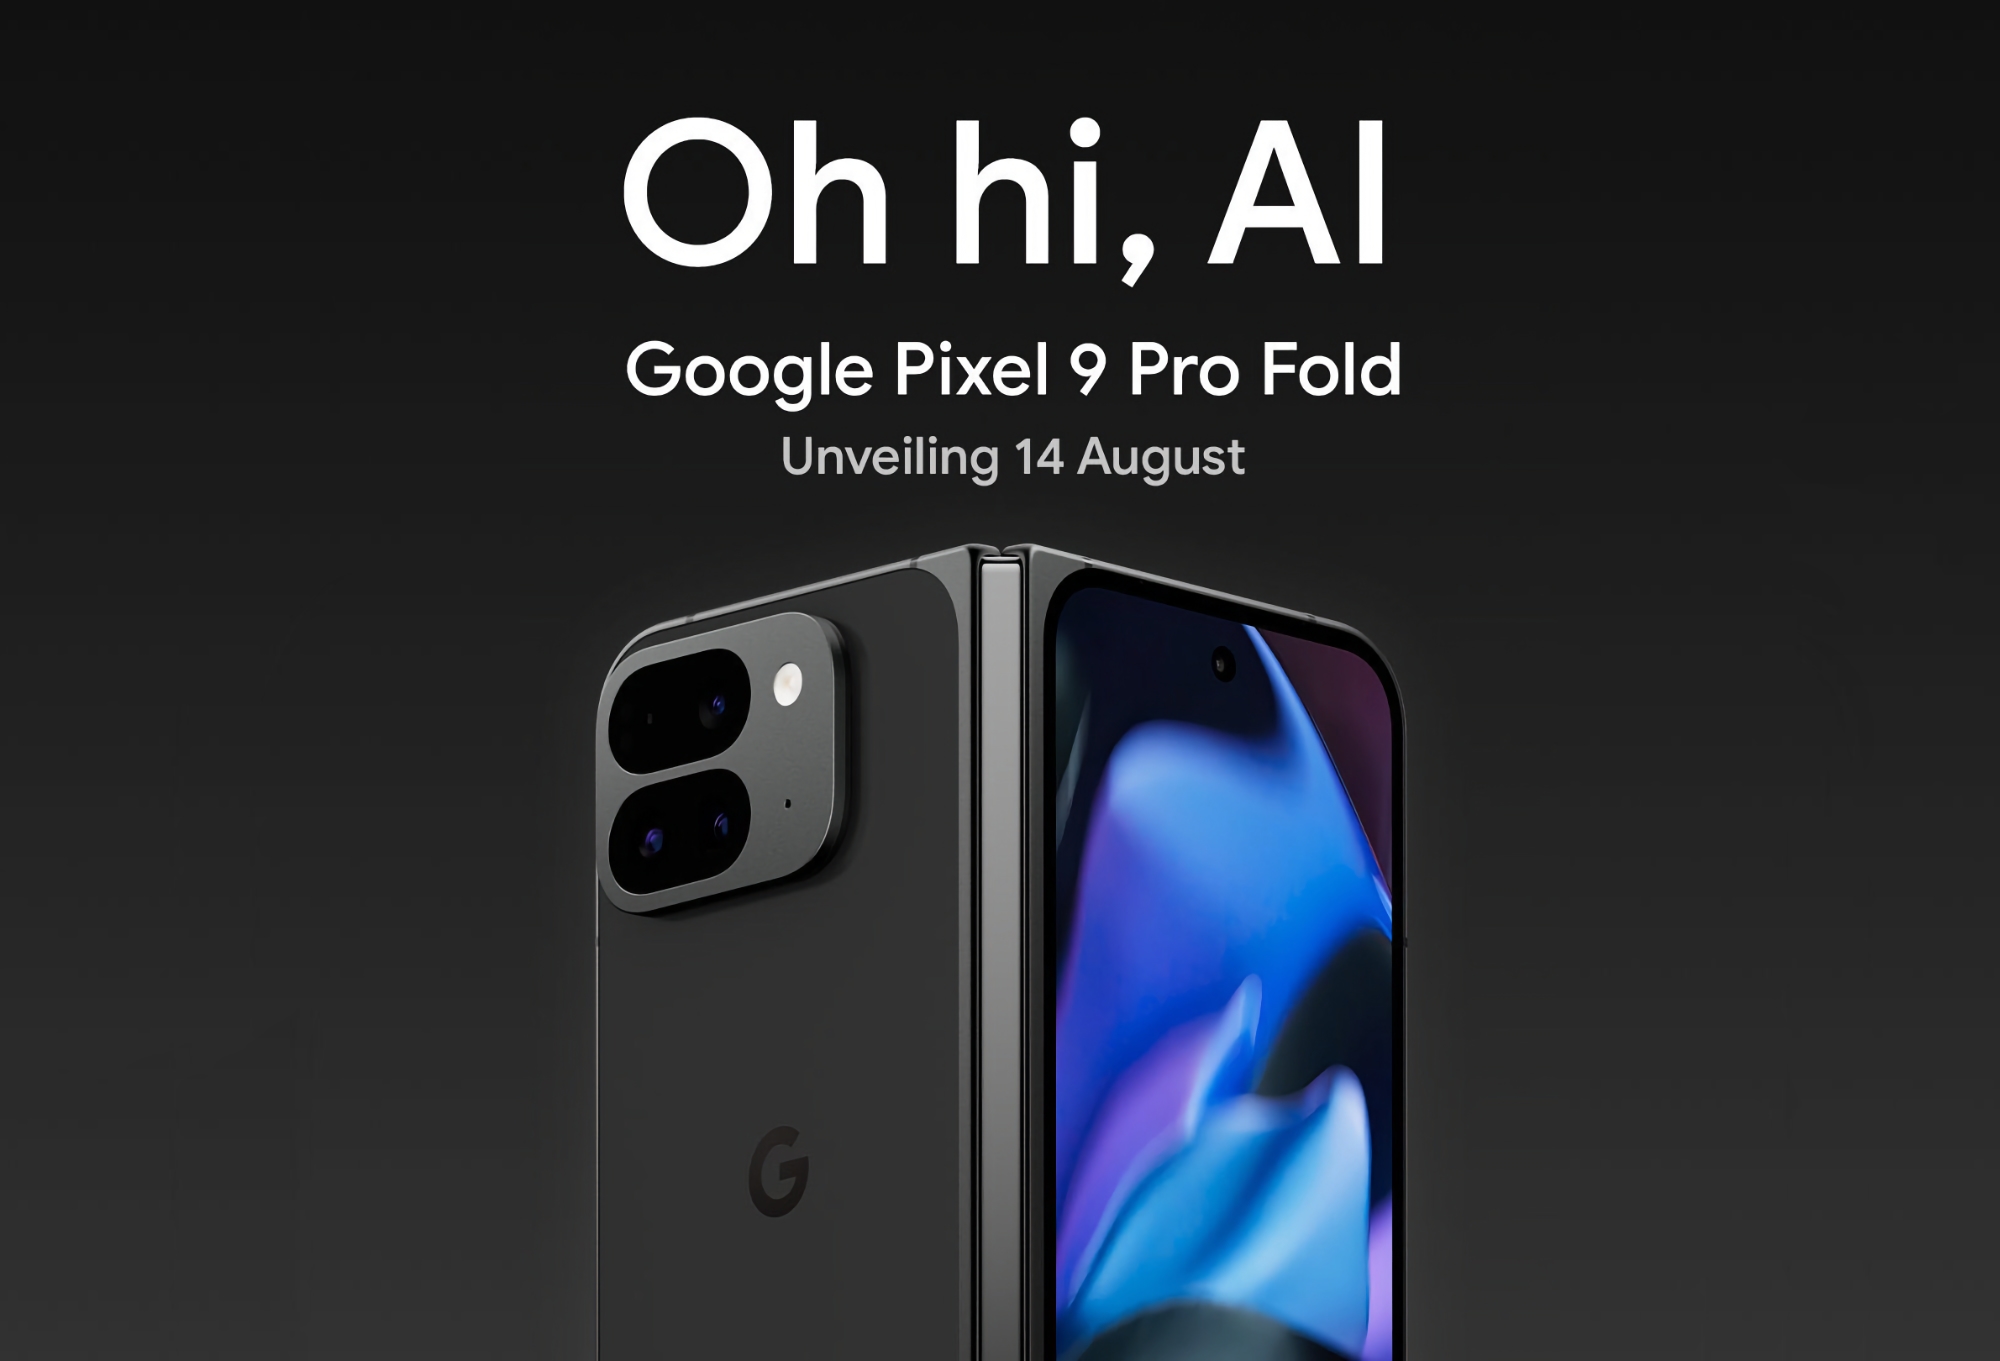 Google potwierdziło, że pokaże składany smartfon Pixel 9 Pro Fold podczas prezentacji 14 sierpnia